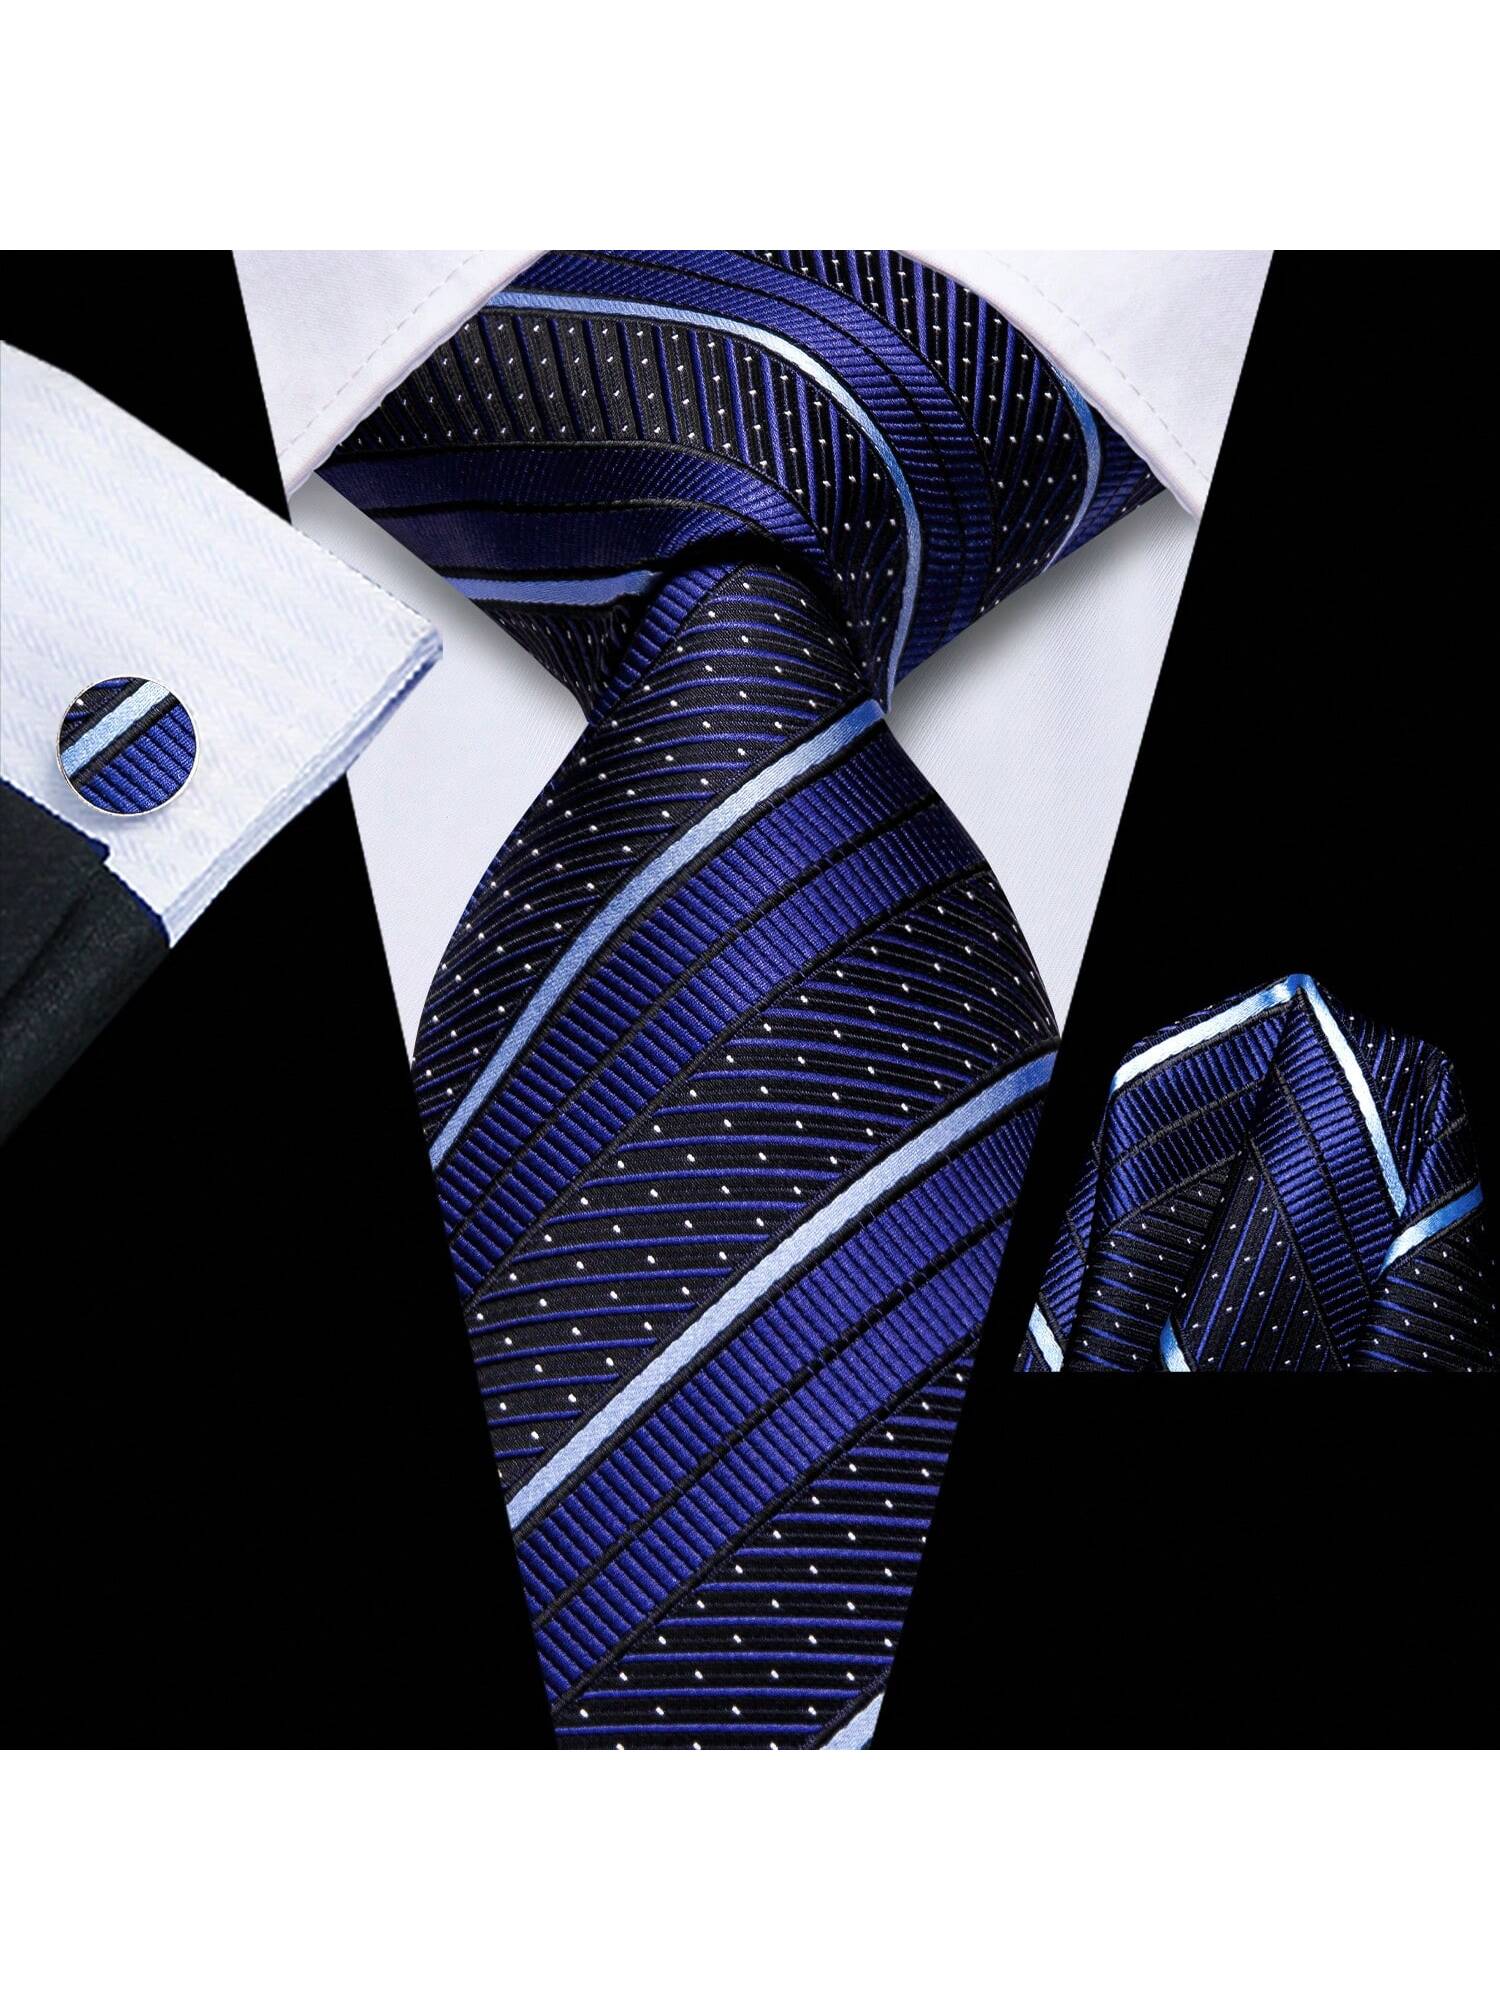 Шелковый мужской галстук Hi-Tie, темно-синий золотой полосатый темно синий мужской галстук шелковый жаккардовый галстук деловой галстук для свадебной вечеринки галстук платок галс